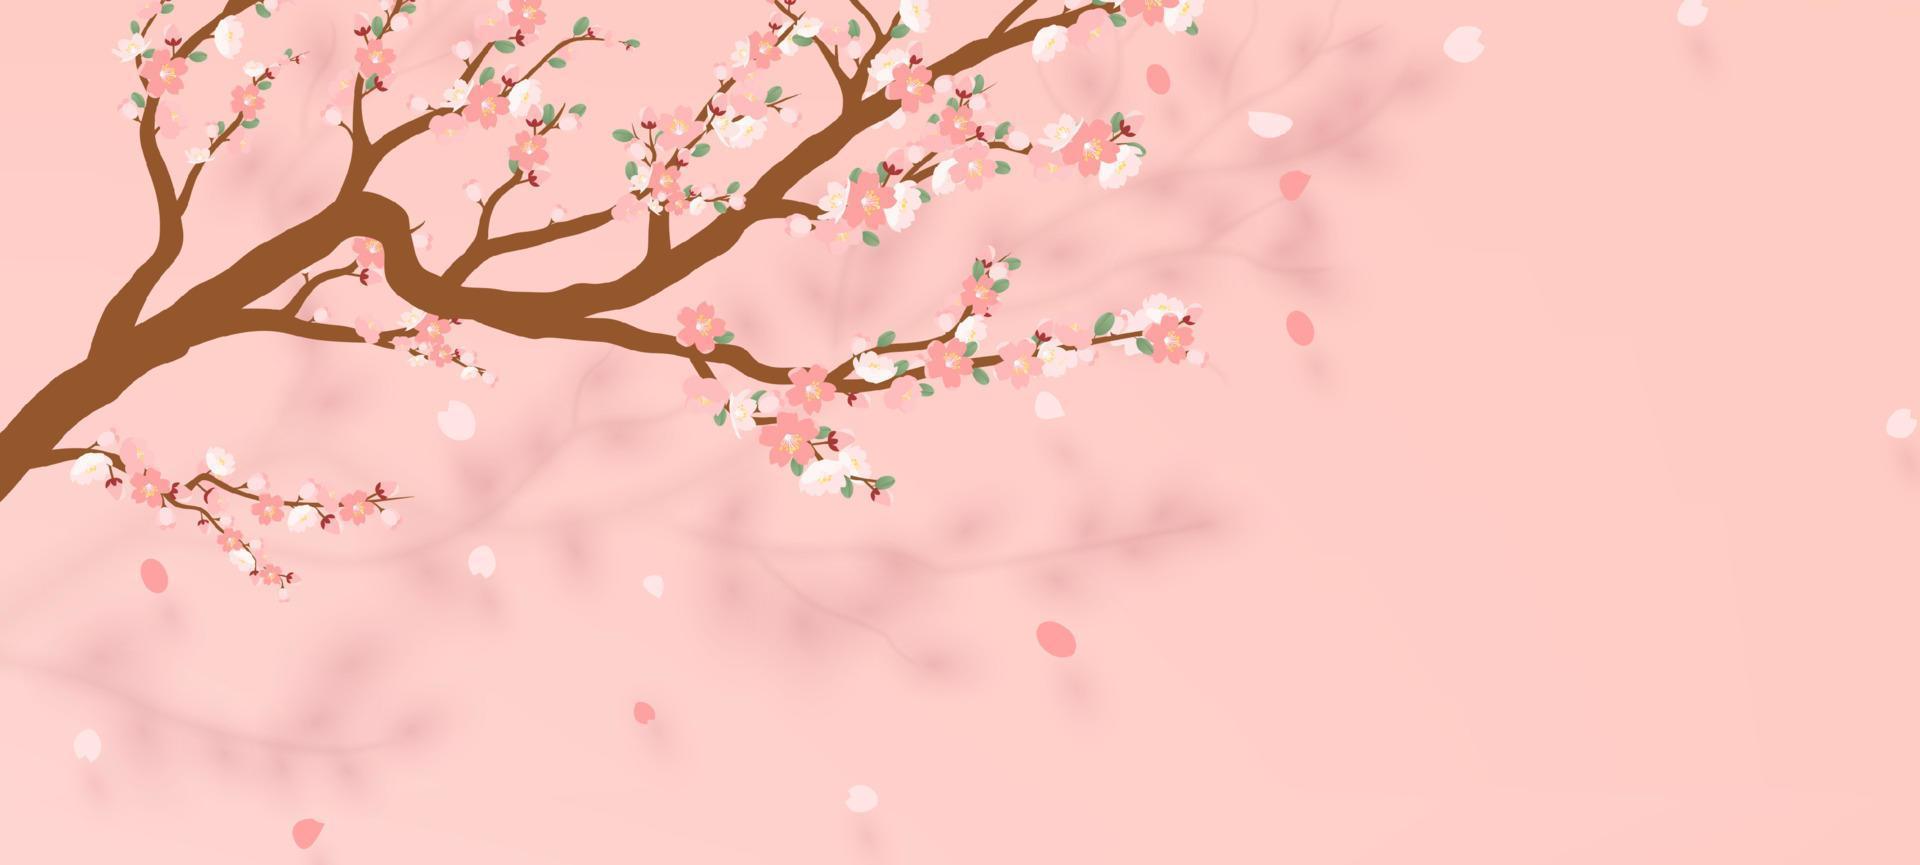 branche fleurie de sakura - cerisier japonais avec pétale tombant. belle fleur de cerisier rose - violet, isolé sur fond blanc. illustration vectorielle vecteur